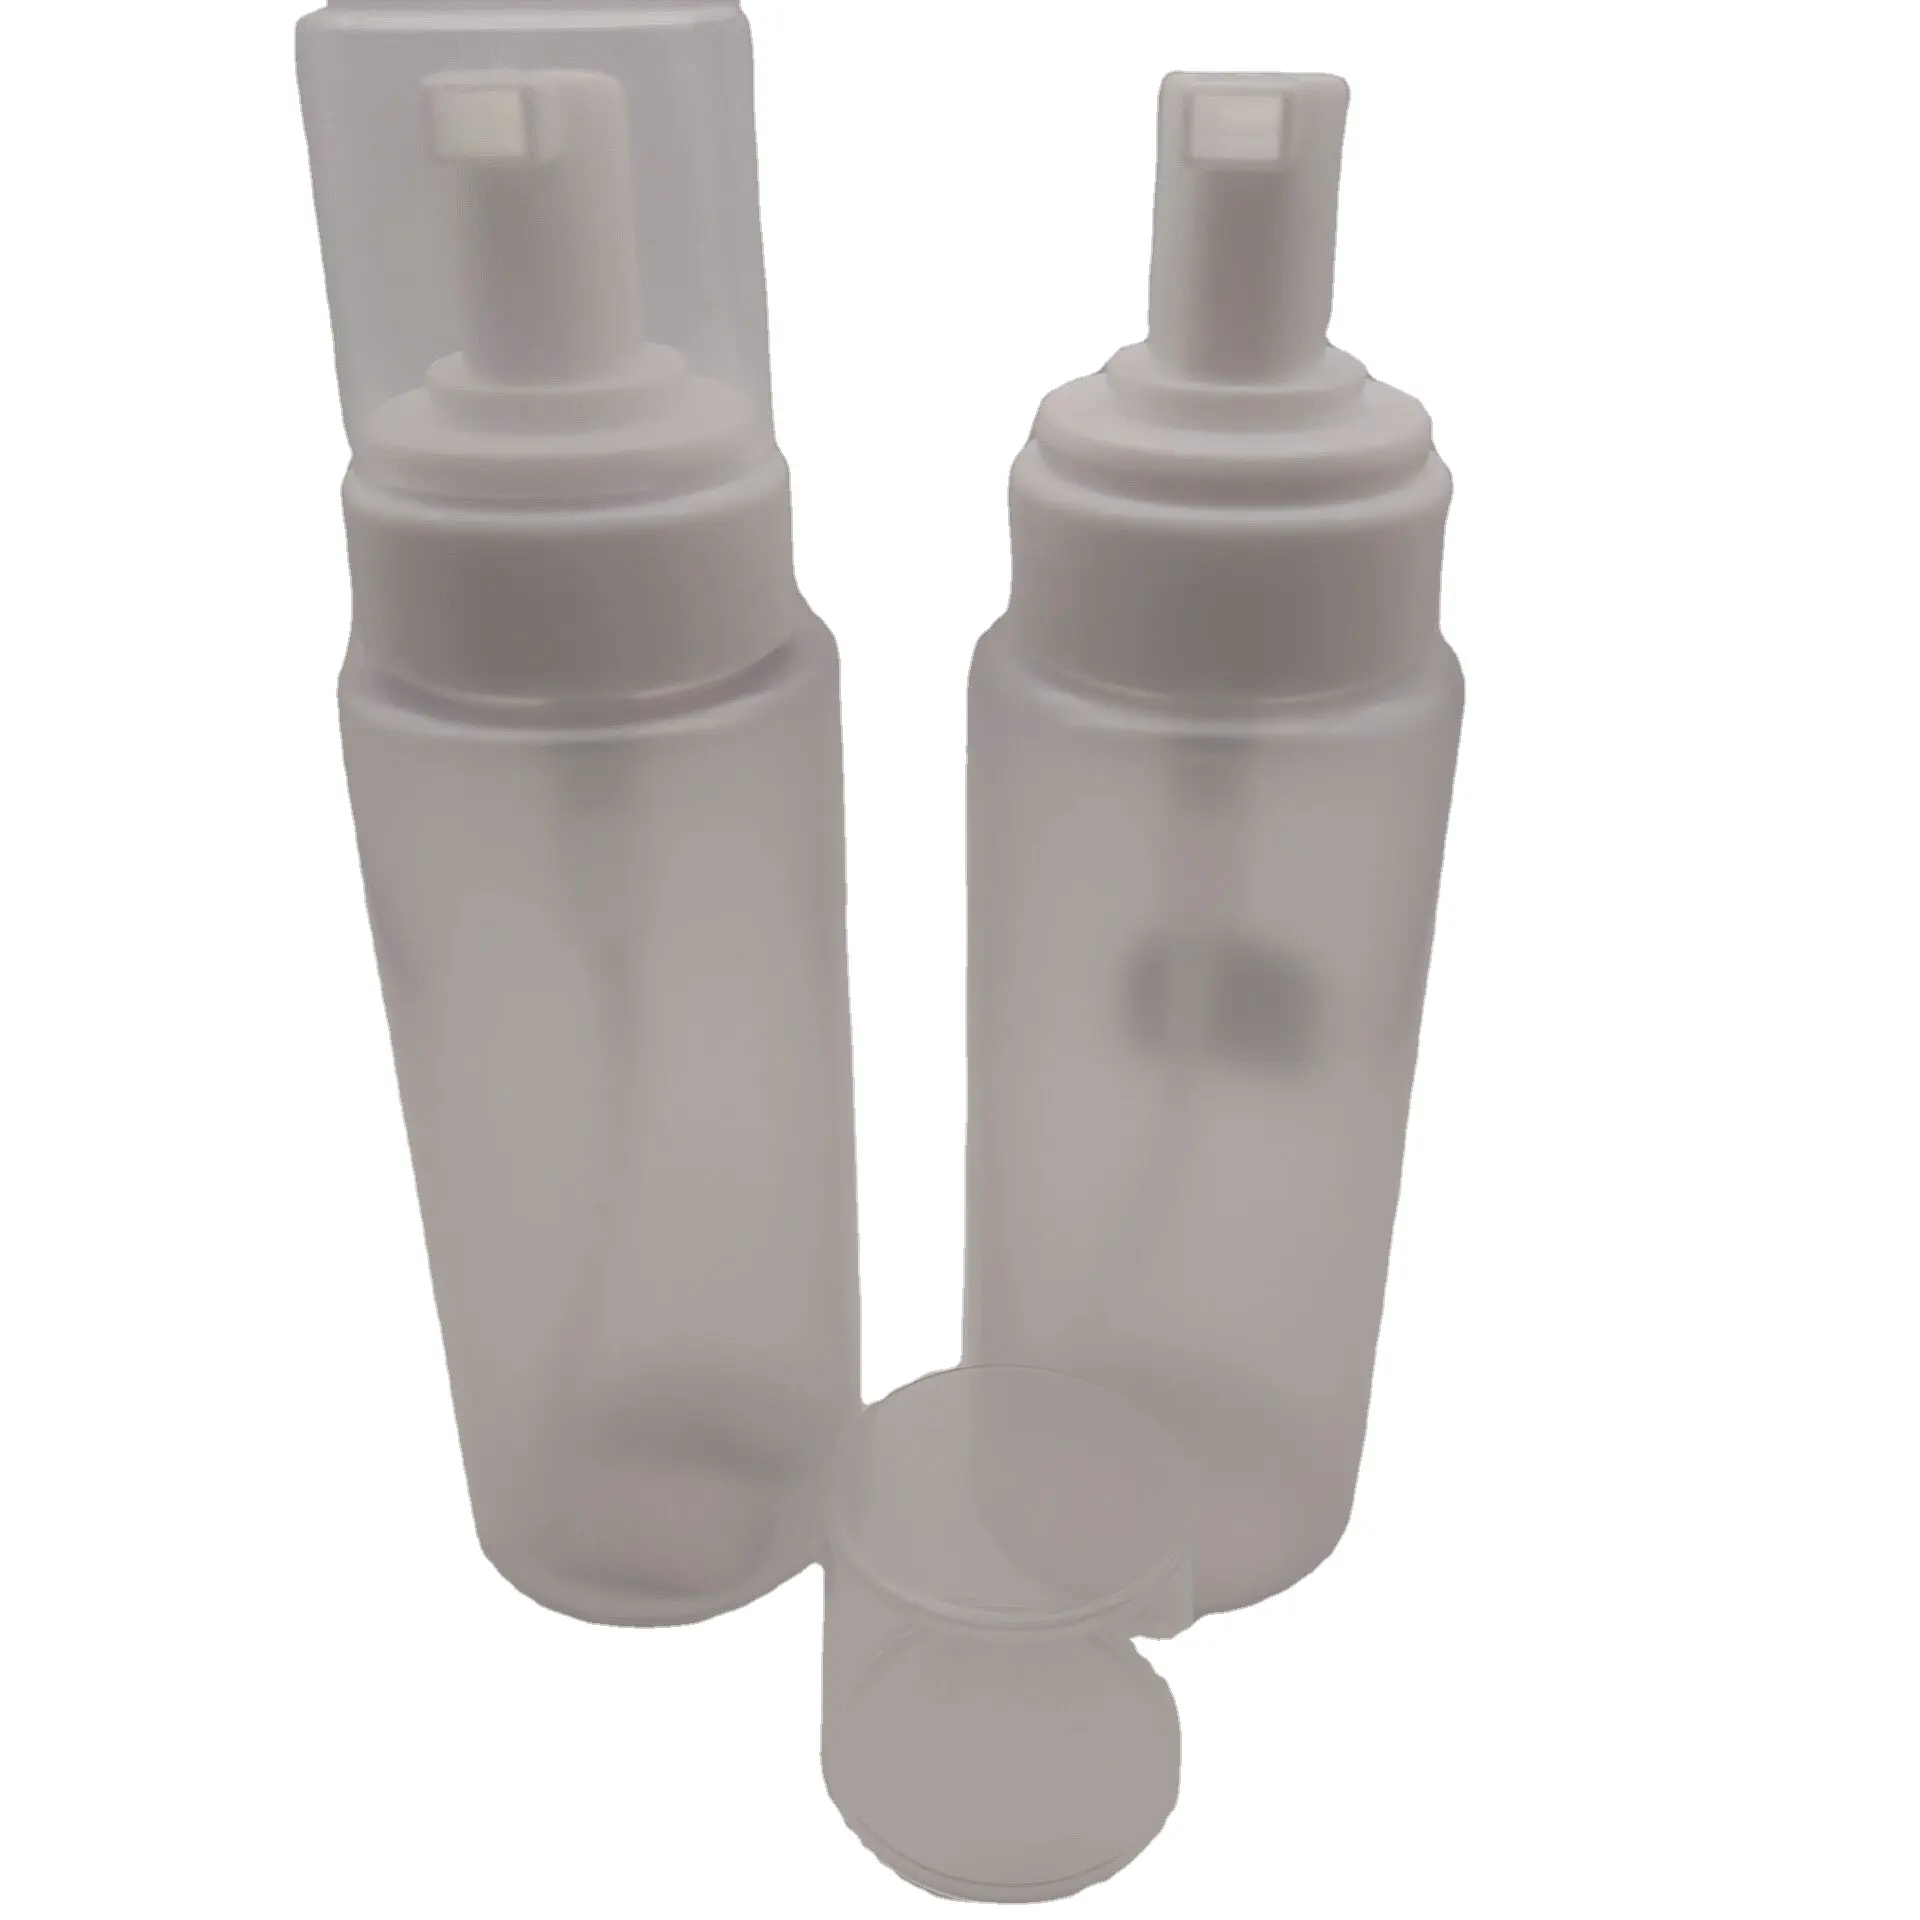 Прозрачный пластиковый матовый косметический пенопластовый флакон для лосьона с широким горлышком, 250 мл, контейнер, пластиковая бутылка с насосом для лосьона